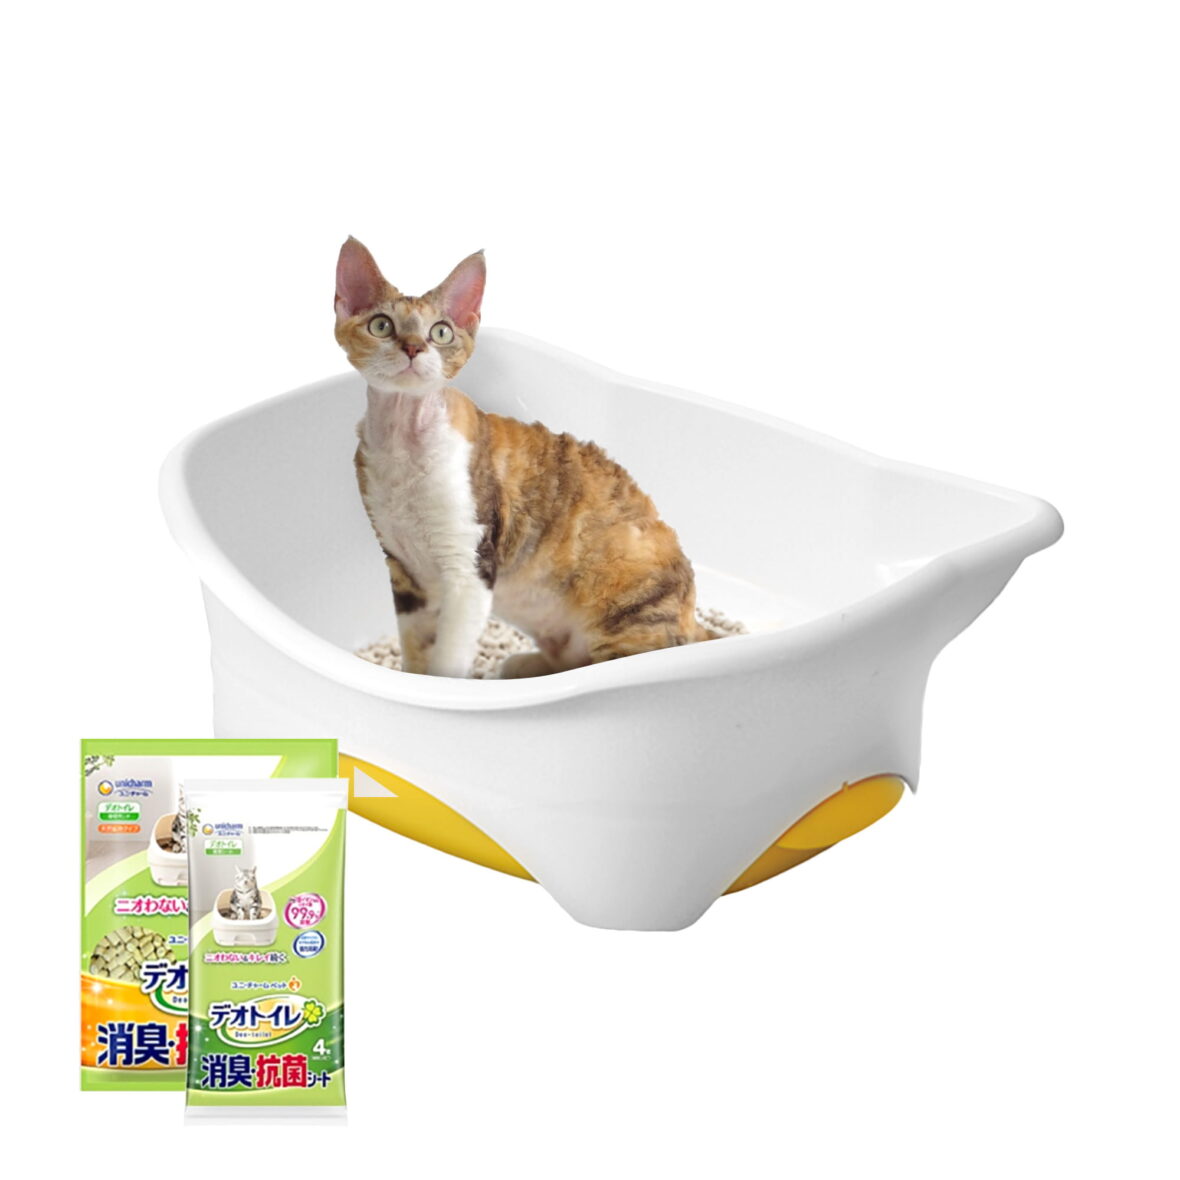 Маленький двухуровневый кошачий туалет (комплект: лоток + гранулы 1,6 кг + 4 пеленки) Оригинальная версия Tidy Cats Breeze cat litter box из Японии (Японский кошачий туалет)